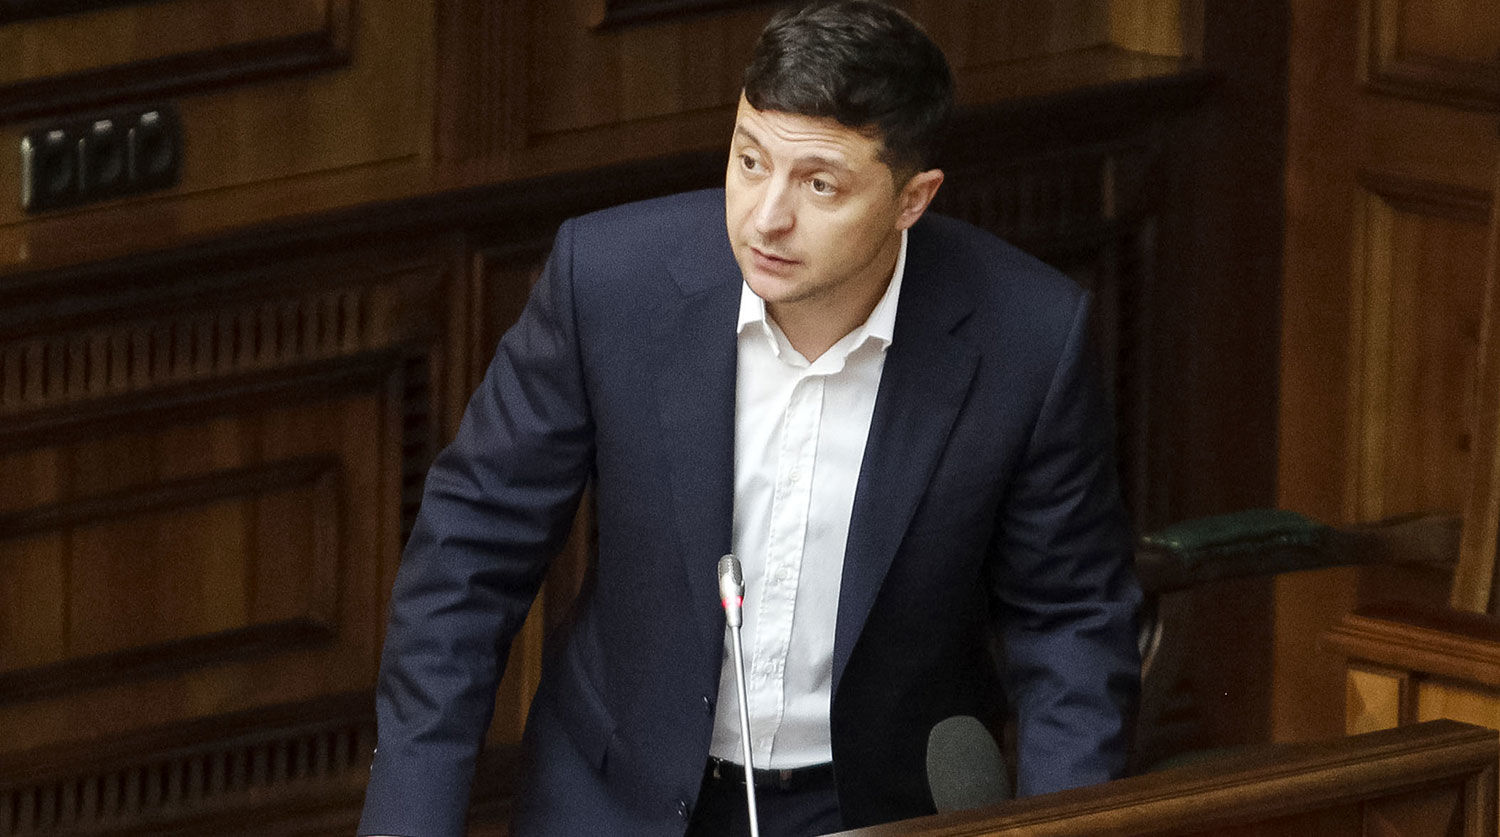 "Достаточно сейфов, набитых миллионами", – Зеленский хочет ликвидировать самый скандальный суд Украины